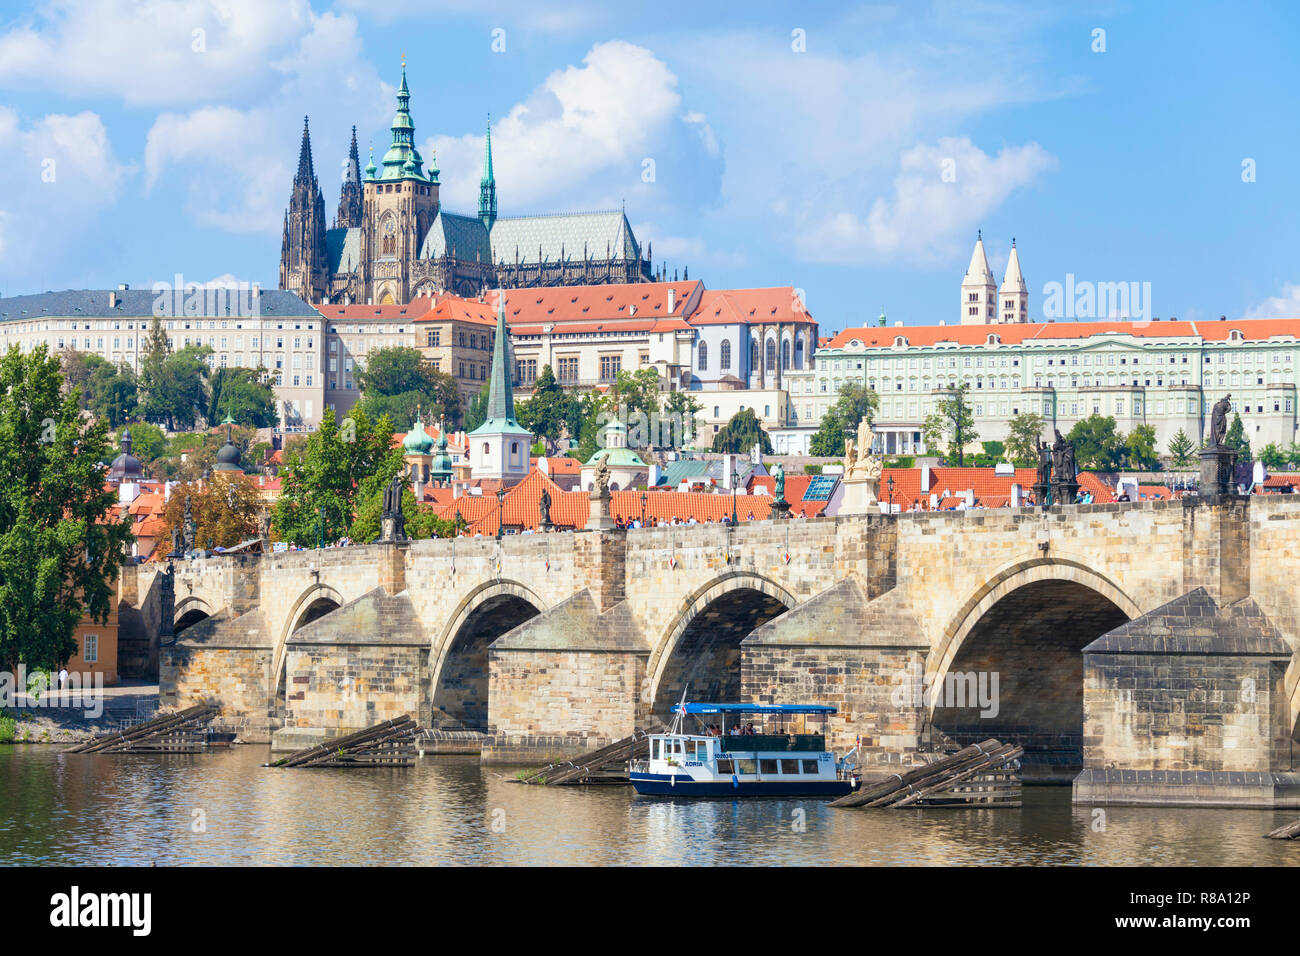 Lo skyline di Praga con il castello di Praga, la cattedrale di san vito Praga gli edifici del Parlamento europeo Charles Bridge sul fiume Moldava Praga Repubblica Ceca Europa Foto Stock